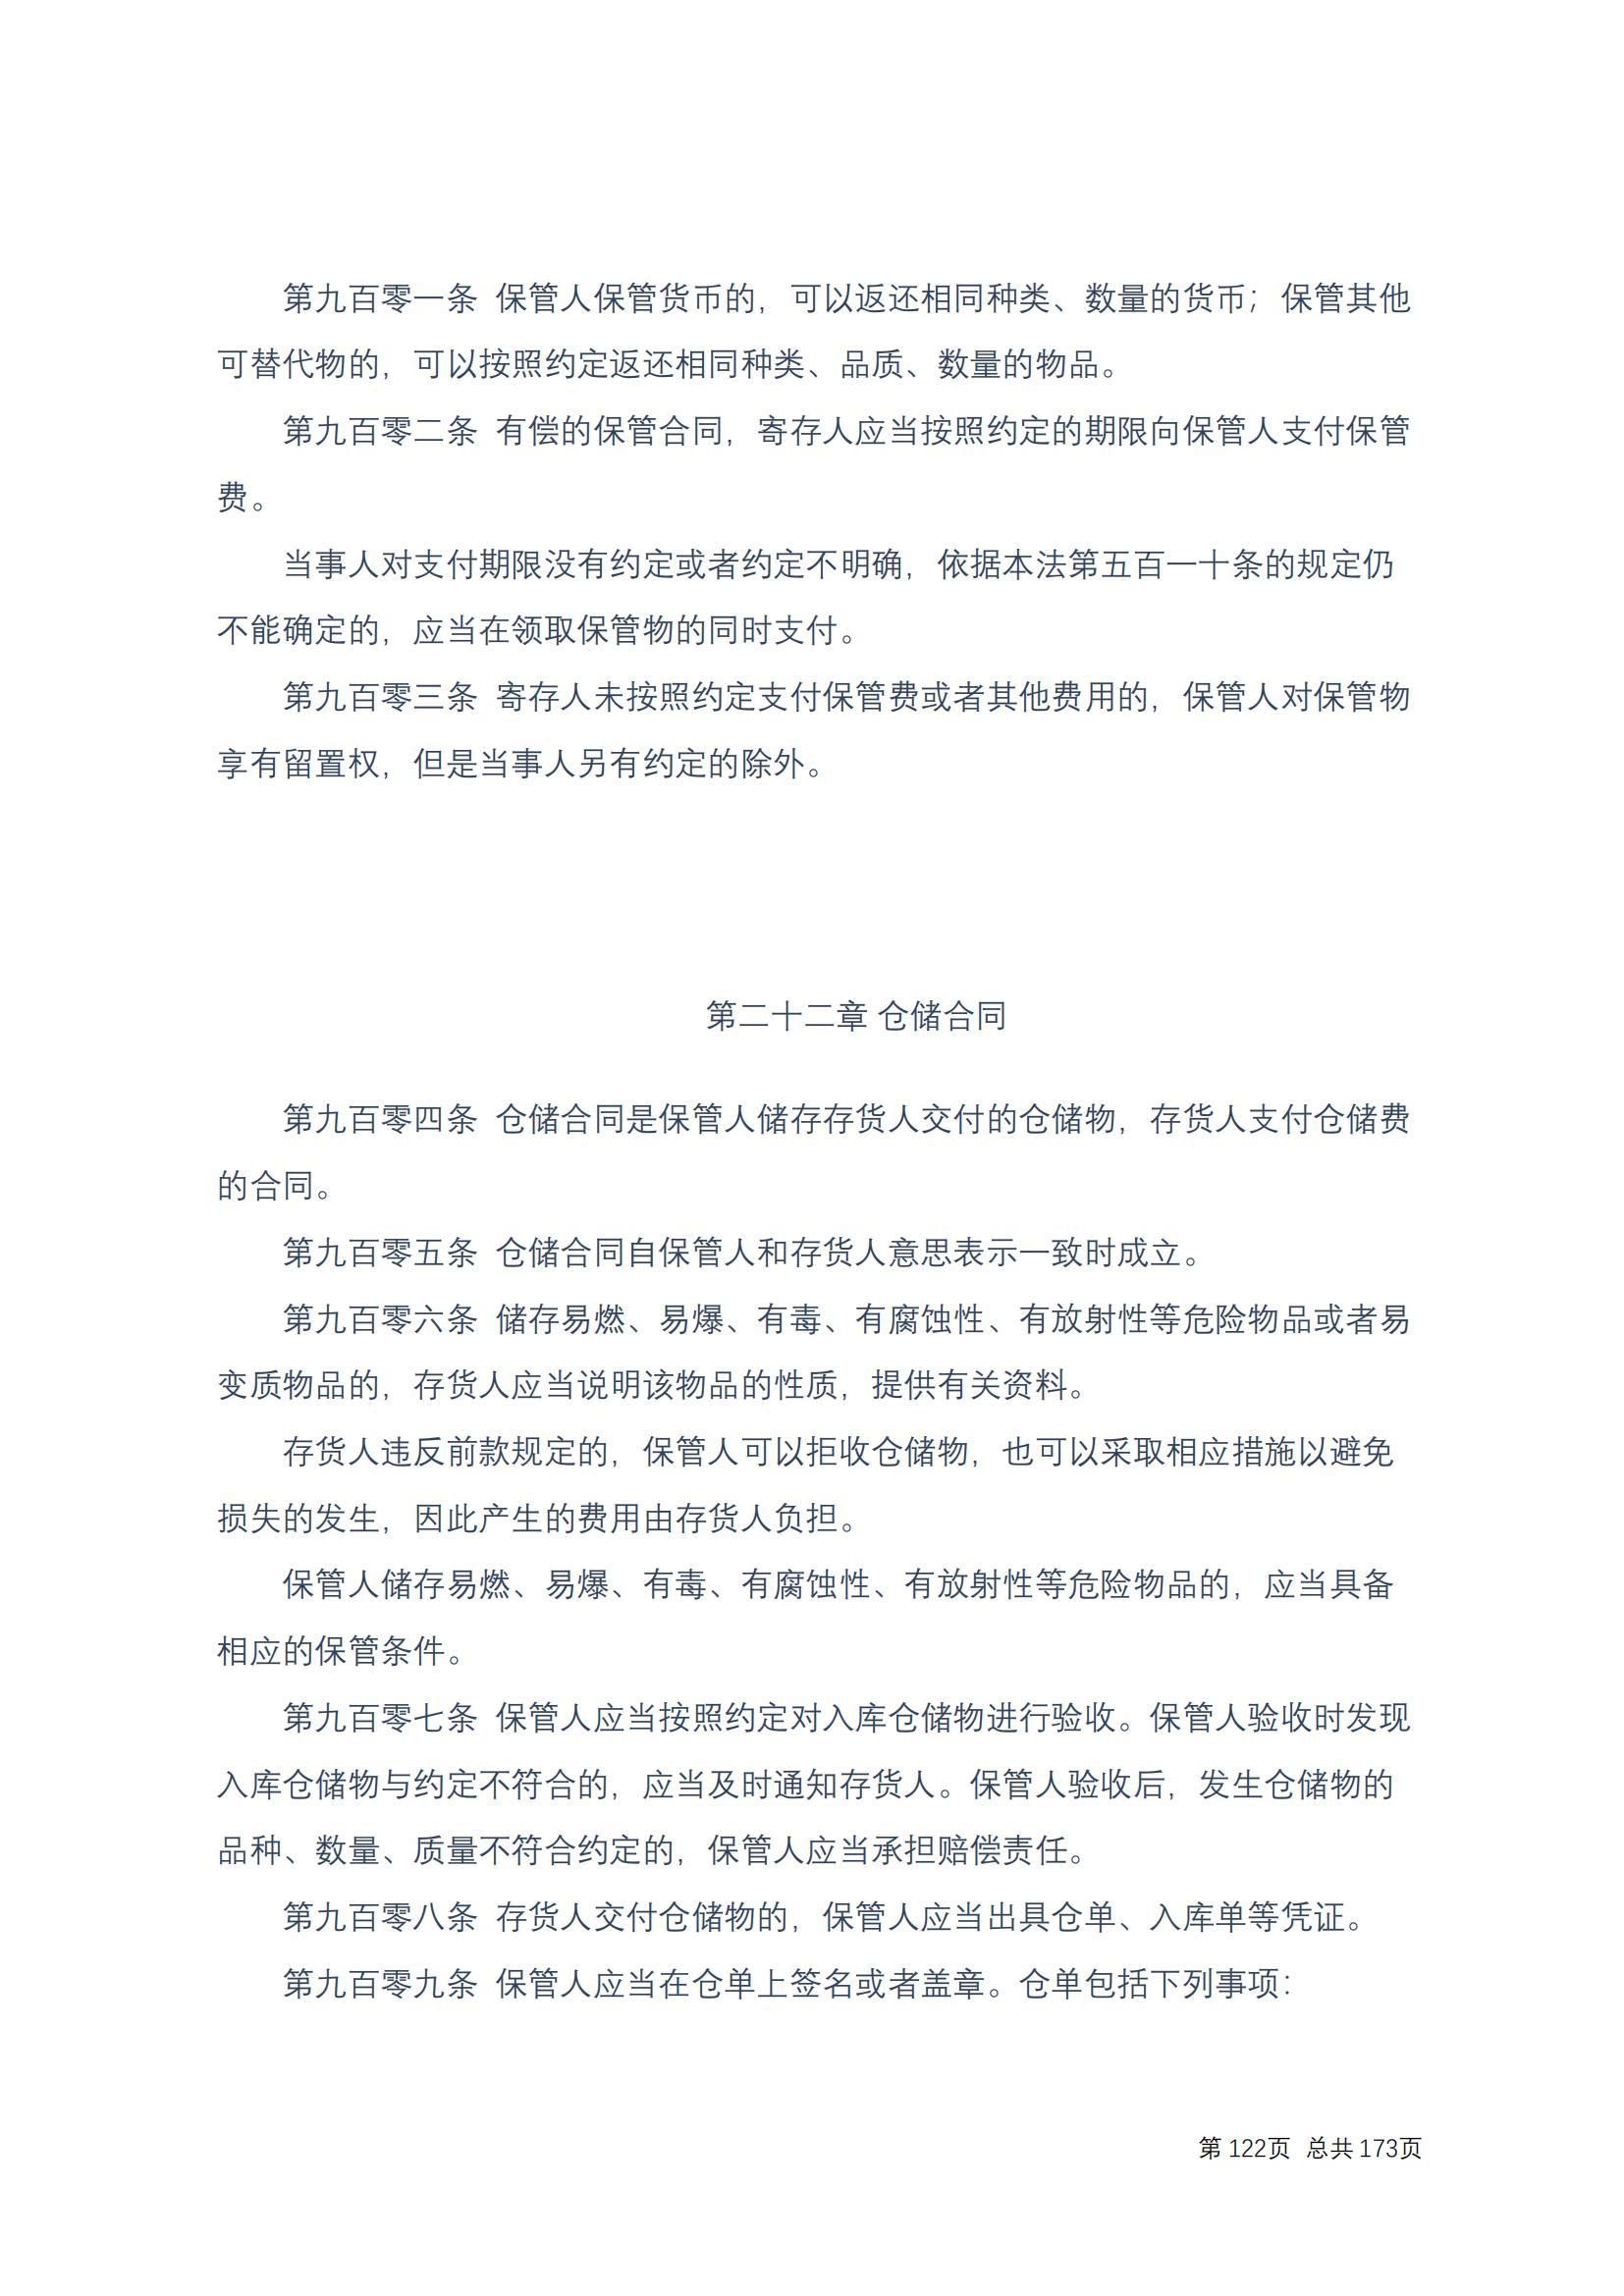 中华人民共和国民法典 修改过_121